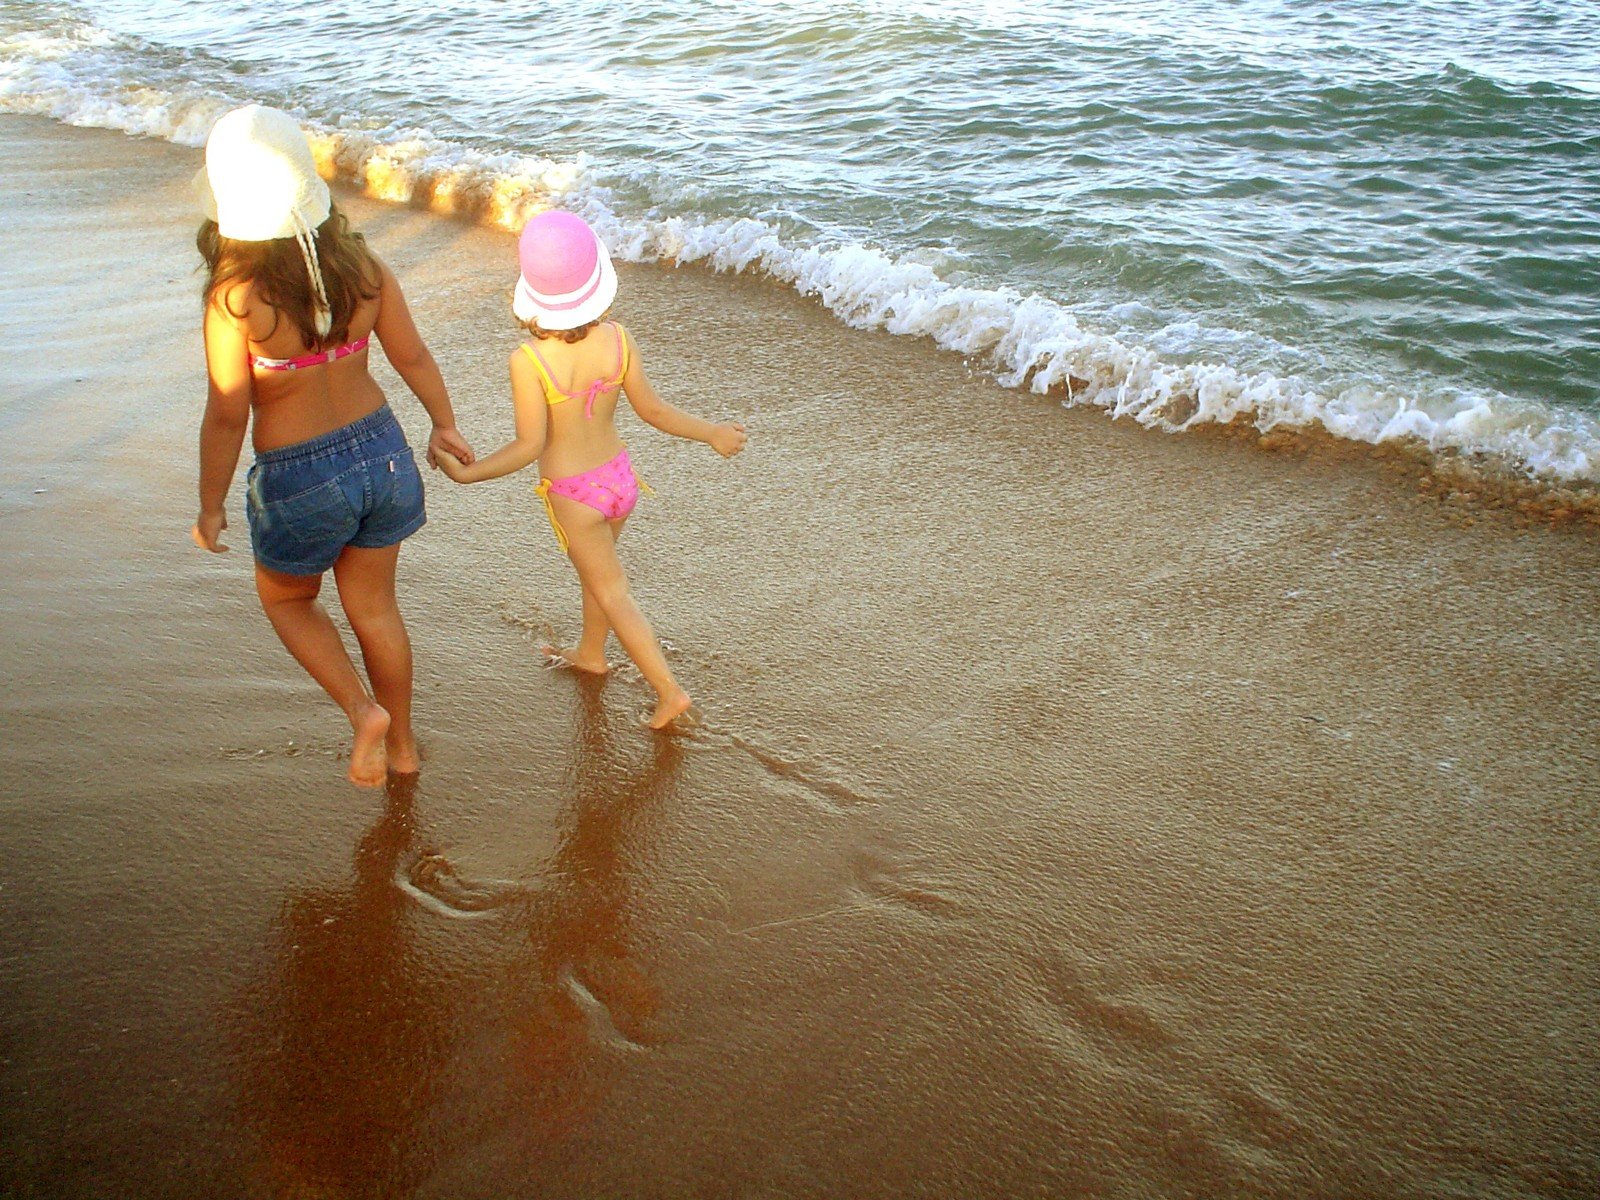 two women walk along a beach holding hands